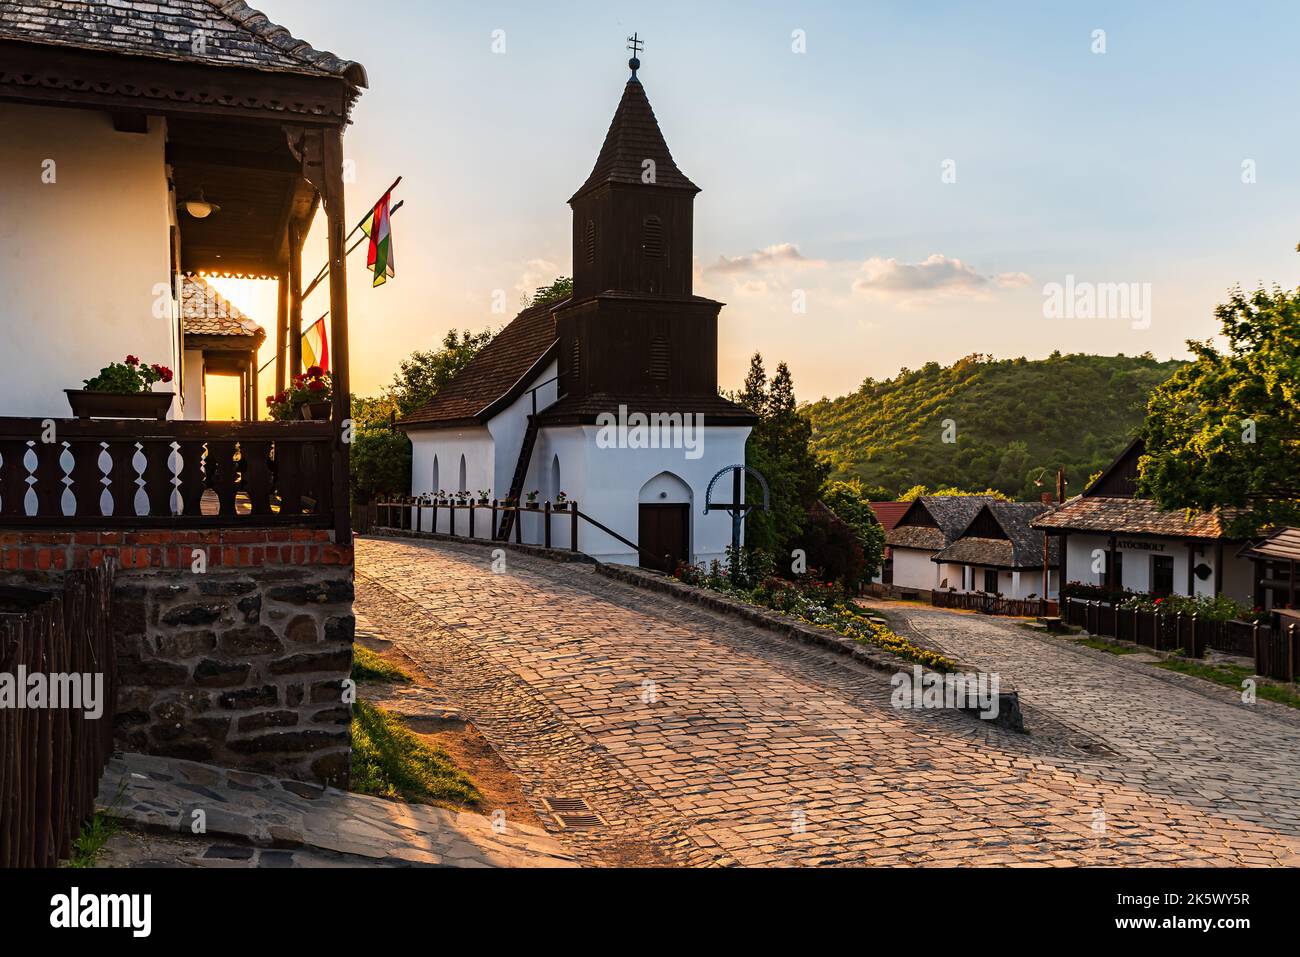 Nette traditionelle Stadt in ungarn, deren Name Holloko ist. Ungarischer Name ist Hollokő (Rabenstein in englisch) Alte Häuser dieser Ort befindet sich auf der UNSECO-Website Stockfoto